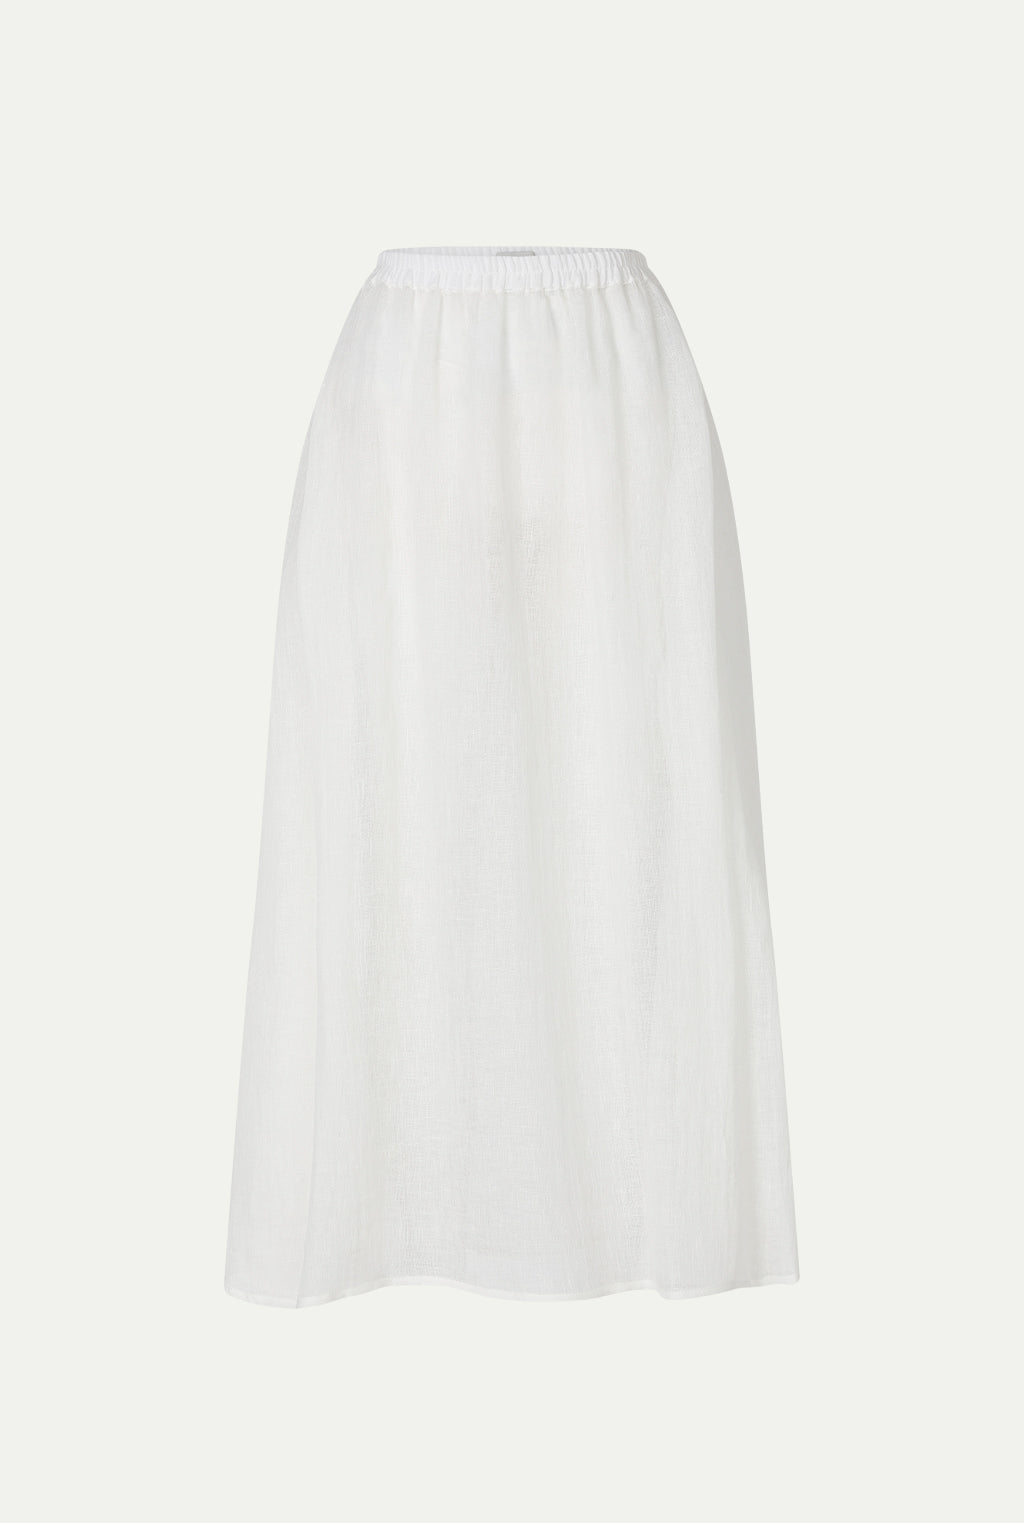 SANAFIR light linen skirt